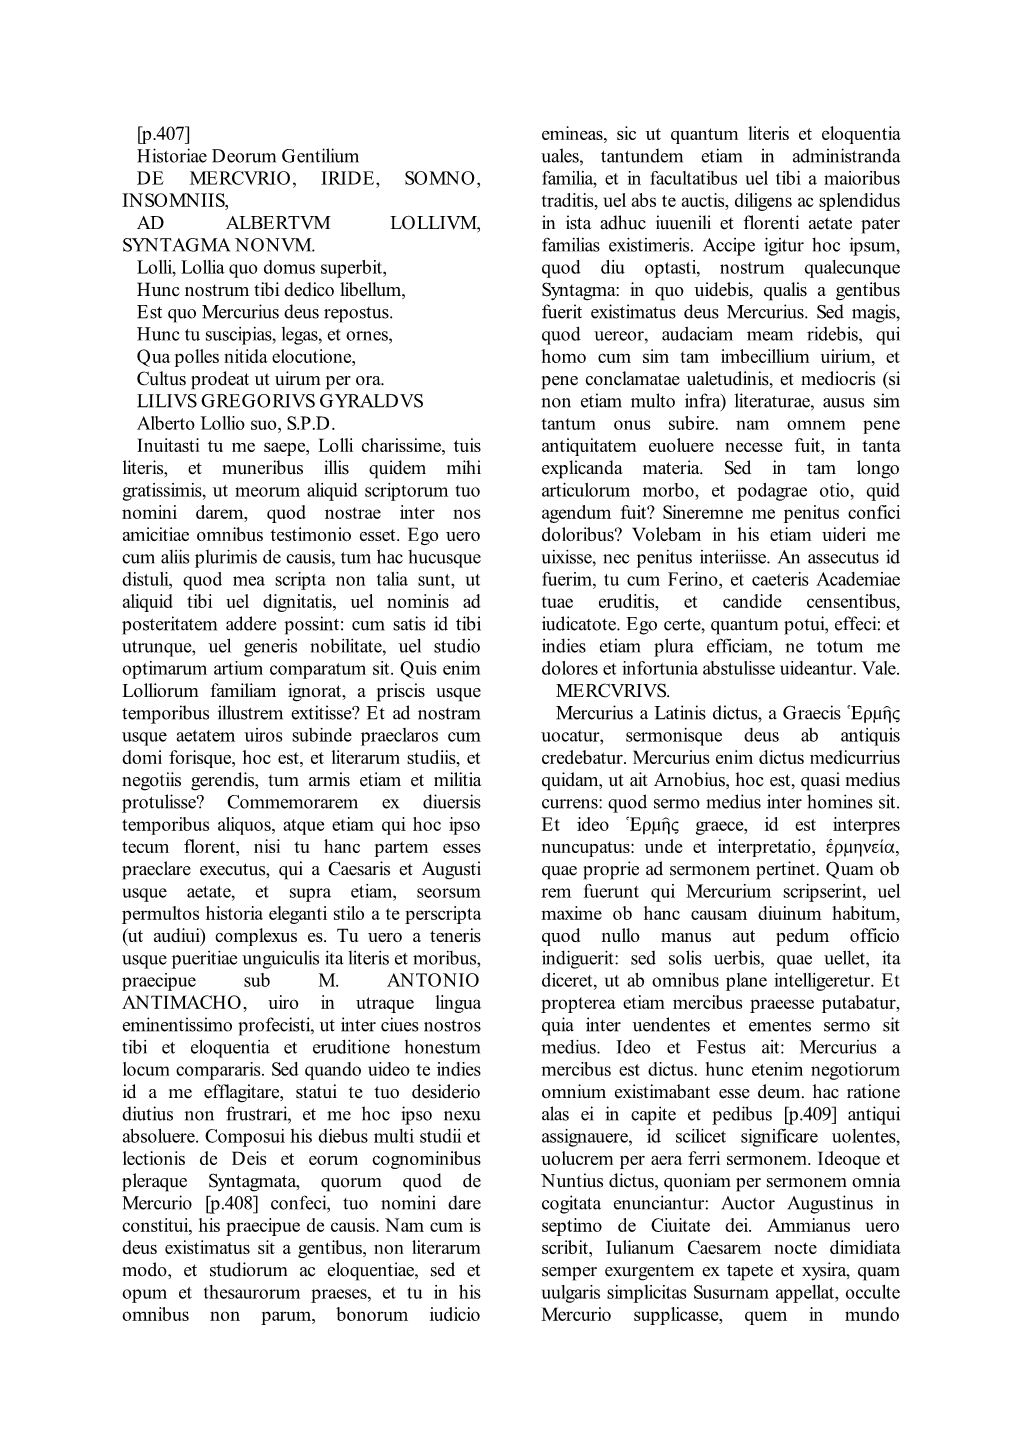 [P.407] Historiae Deorum Gentilium DE MERCVRIO, IRIDE, SOMNO, INSOMNIIS, AD ALBERTVM LOLLIVM, SYNTAGMA NONVM. Lolli, Lollia